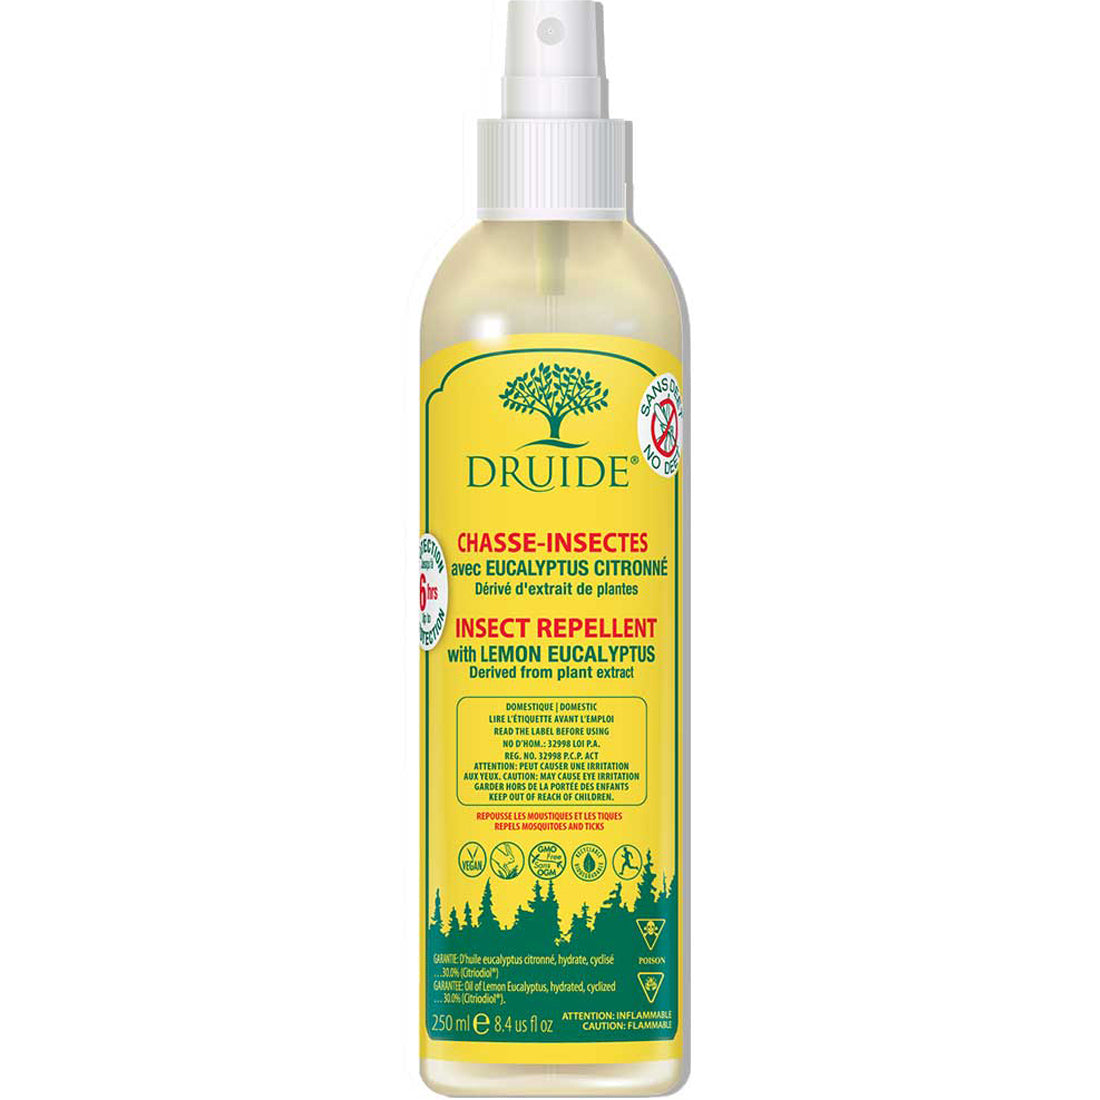 Druide Insect Repellent Lemon Eucalyptus